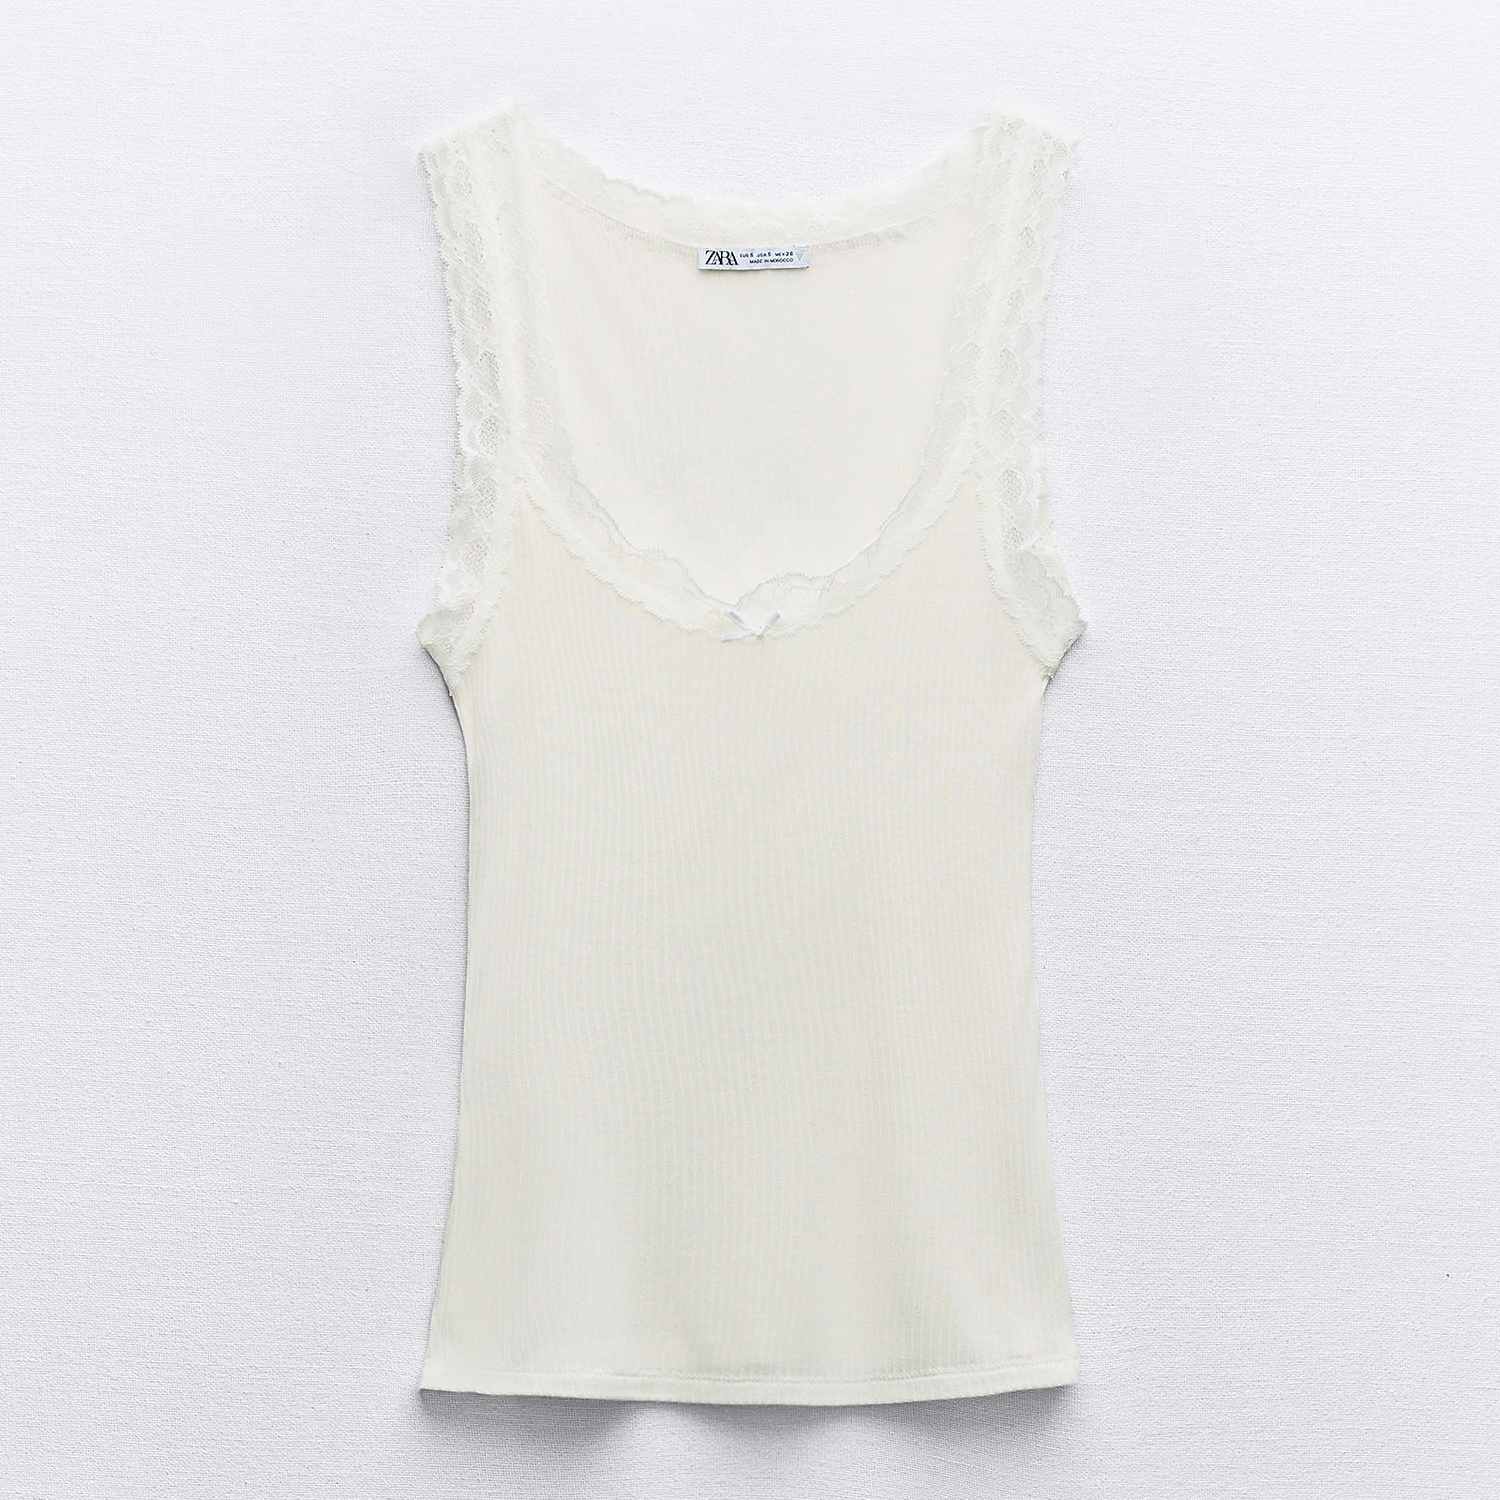 Топ Zara Modal Blend With Lace, белый топ с v образным вырезом с кружевом m белый